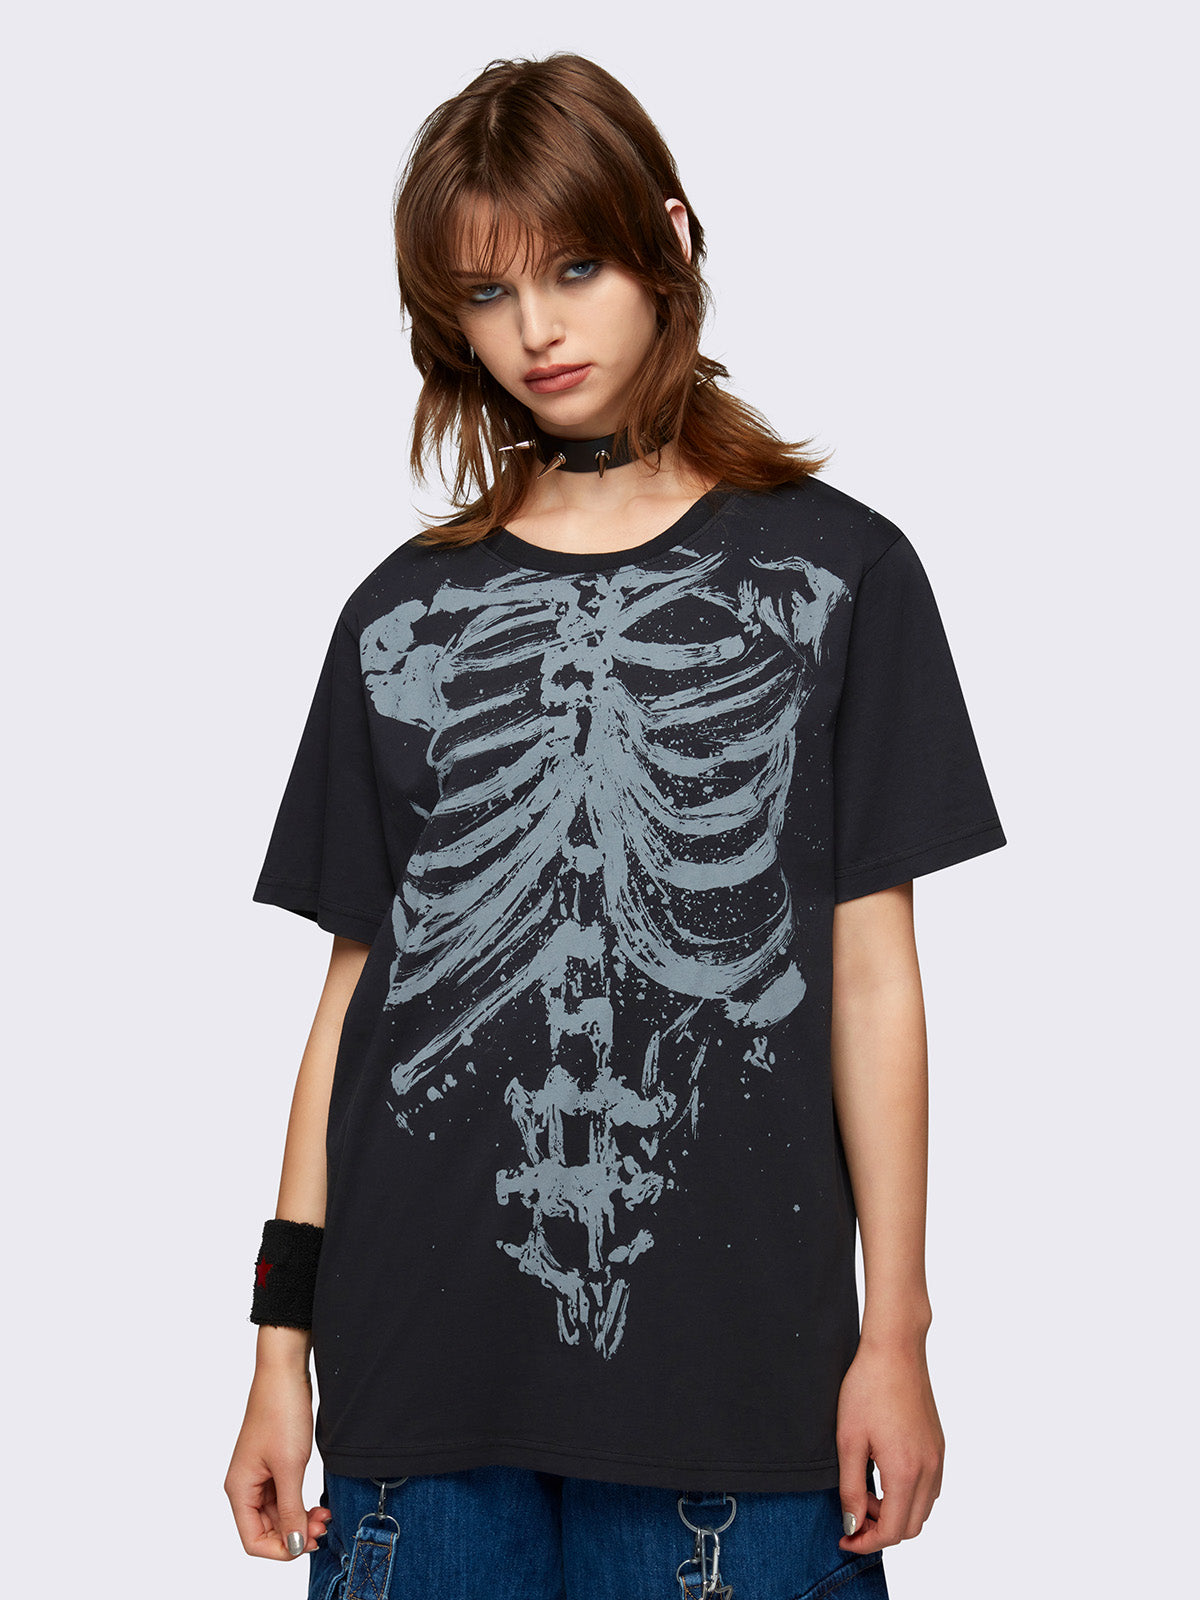 Shadowed Bones Black Graphic T-shirt